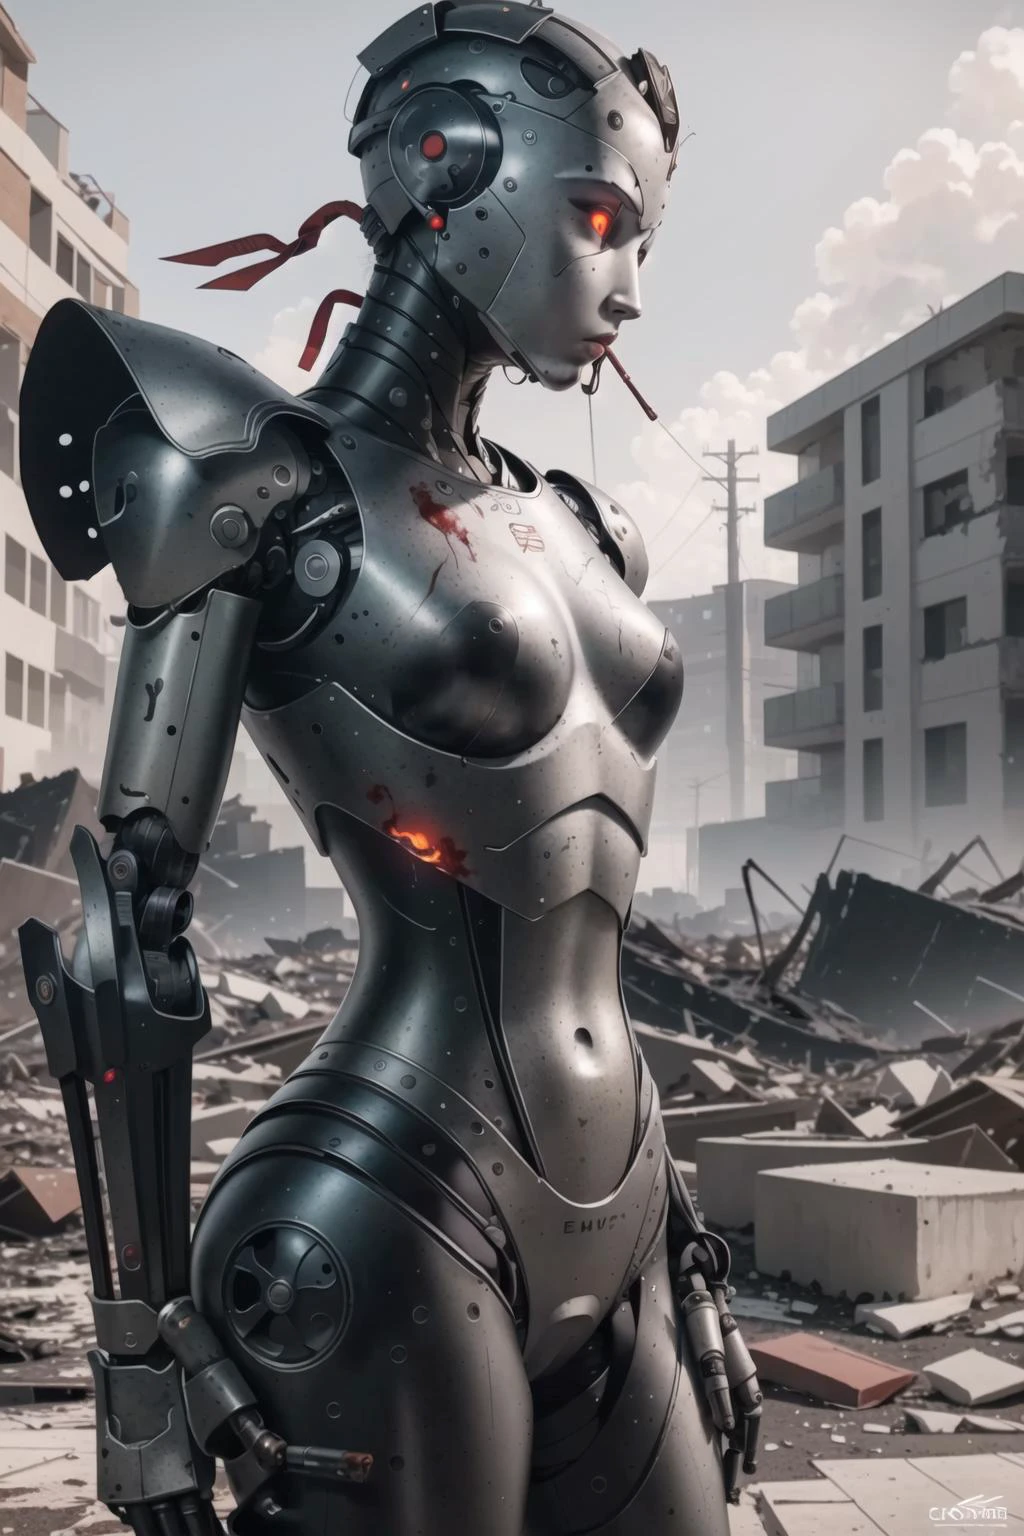 Лучшее качество, сложные детали,  (Гиперреалистичная цифровая иллюстрация),(шедевр:1.1),


 кровь, разрушенные пейзажи, обломки, щебень, огонь на заднем плане, курить, оторванные конечности, Страшная атмосфера, humanoid робот, робот, робот суставы, суставы, шлем, броня, робот girl,